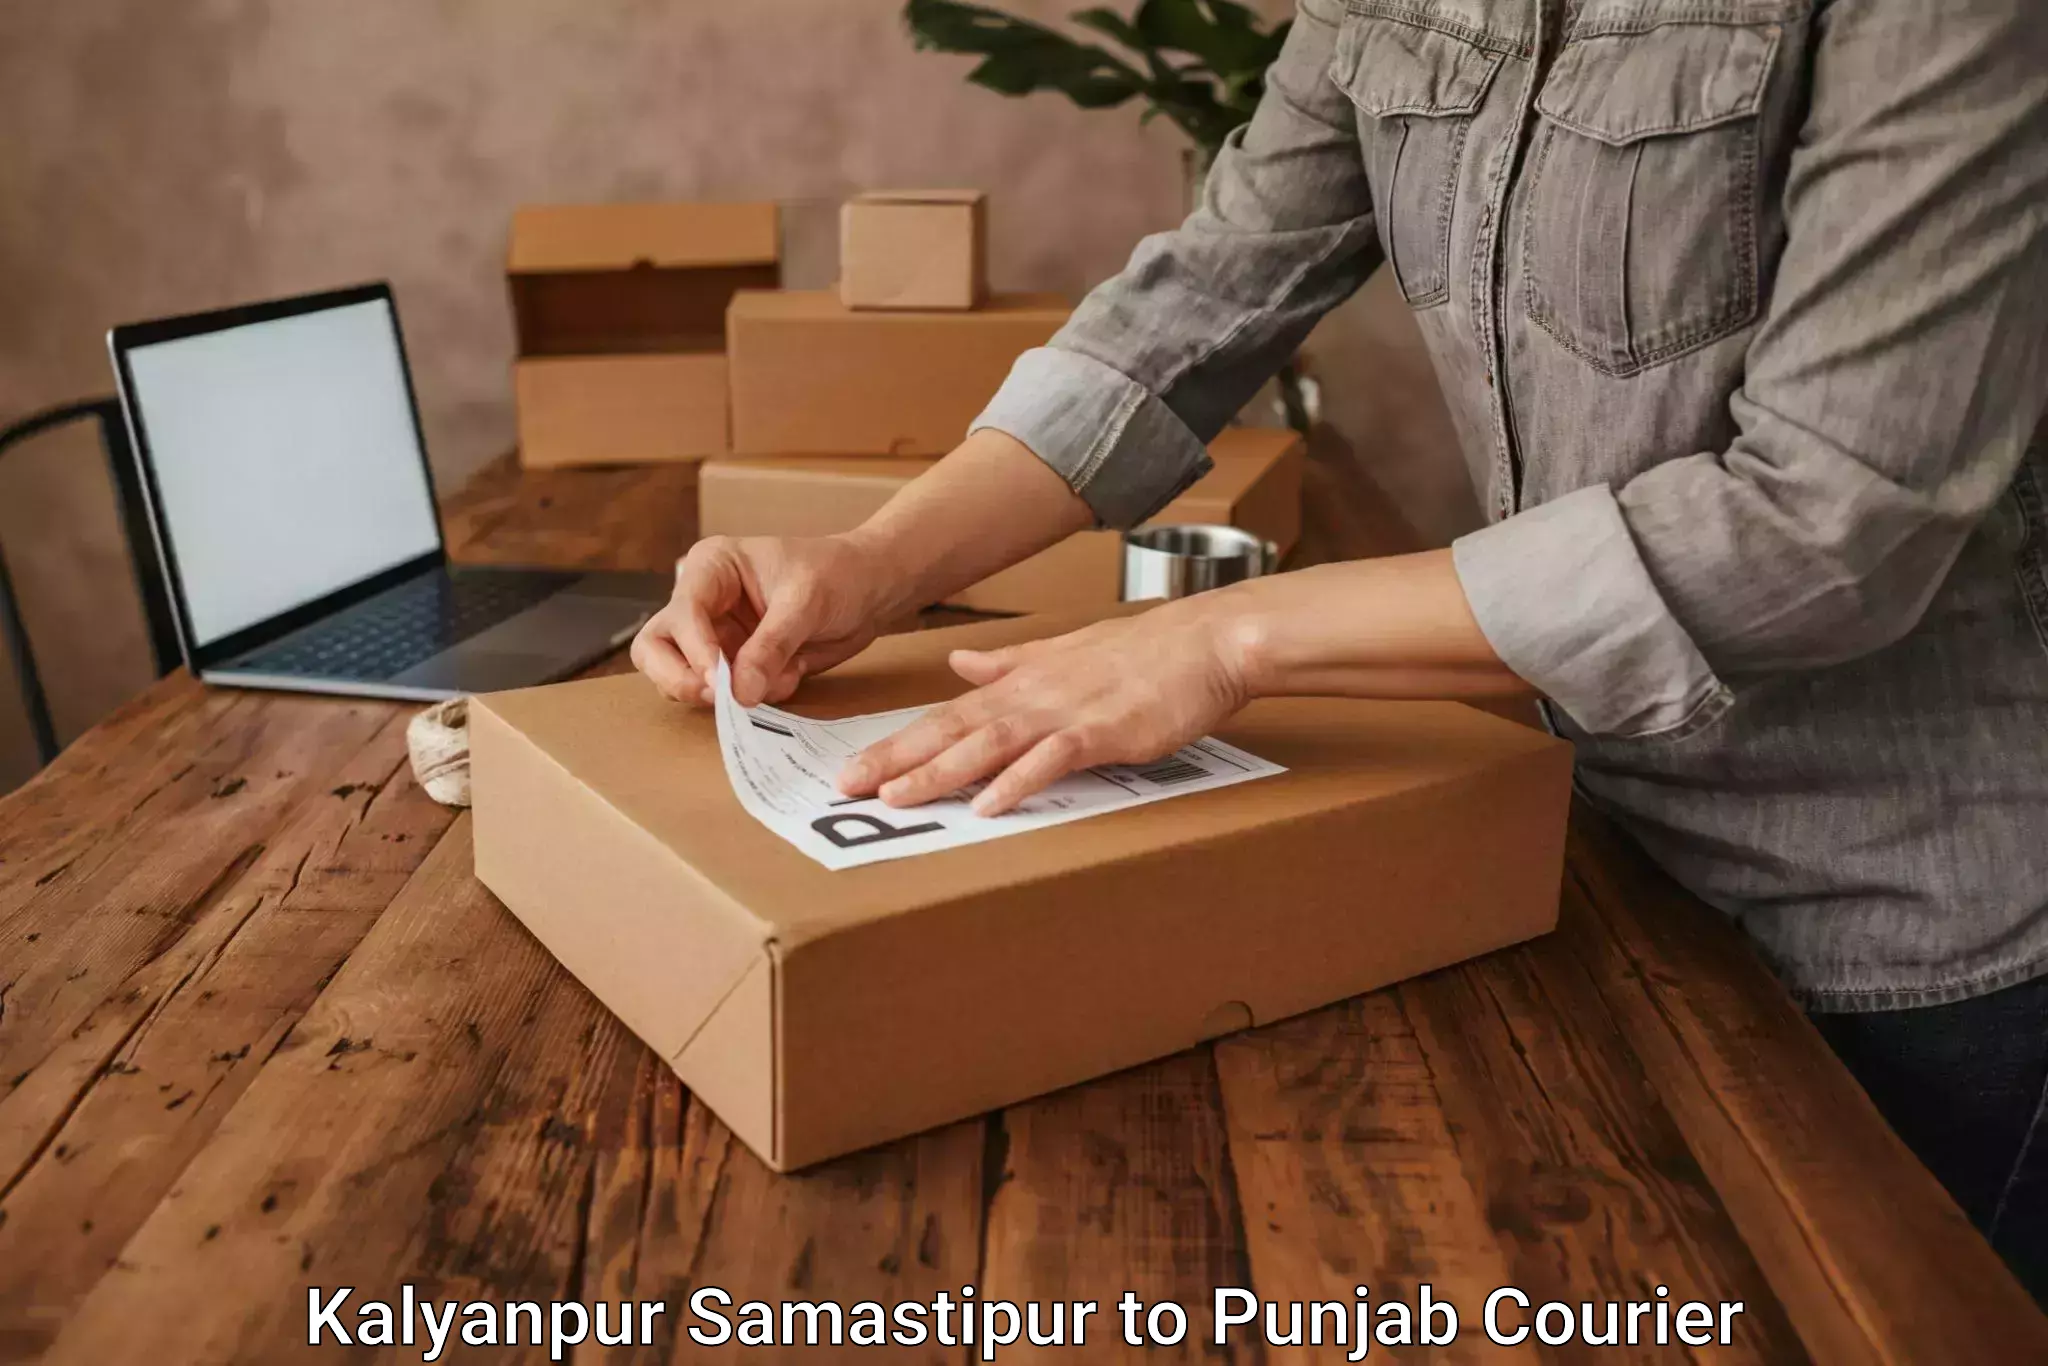 Hassle-free relocation Kalyanpur Samastipur to Punjab